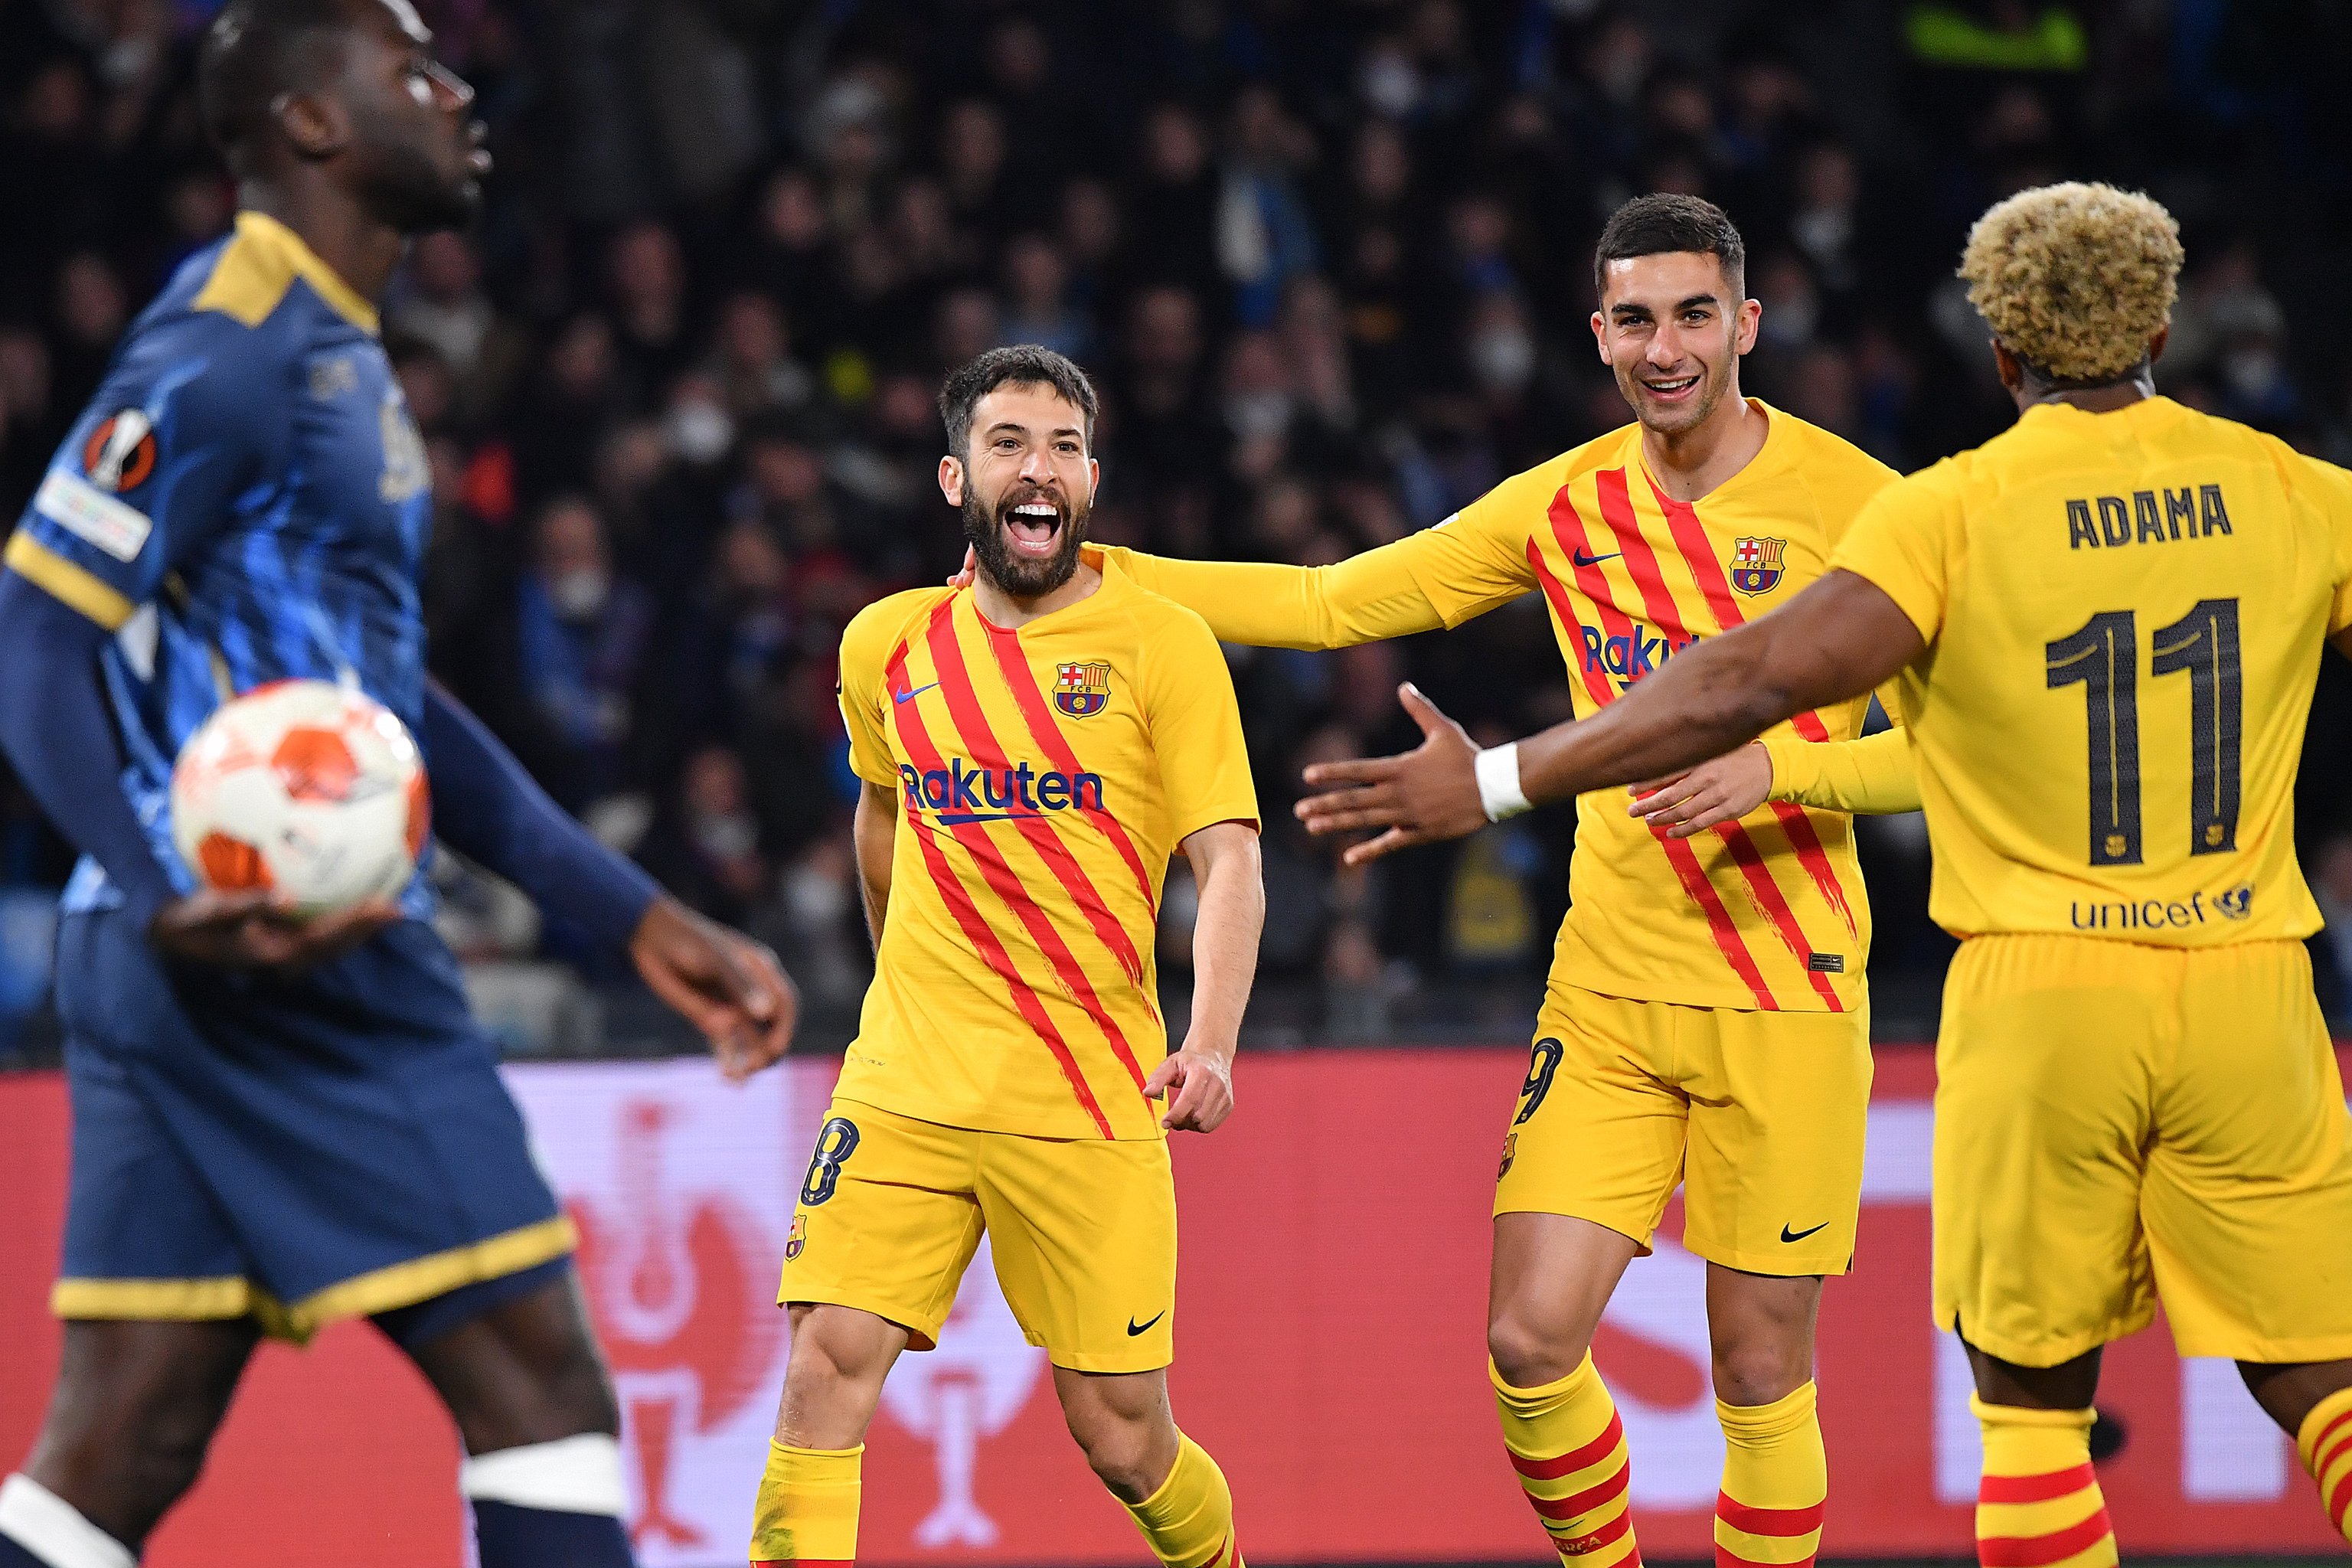 Barça-Galatasaray als vuitens de final de l'Europa League, duel d'antics coneguts